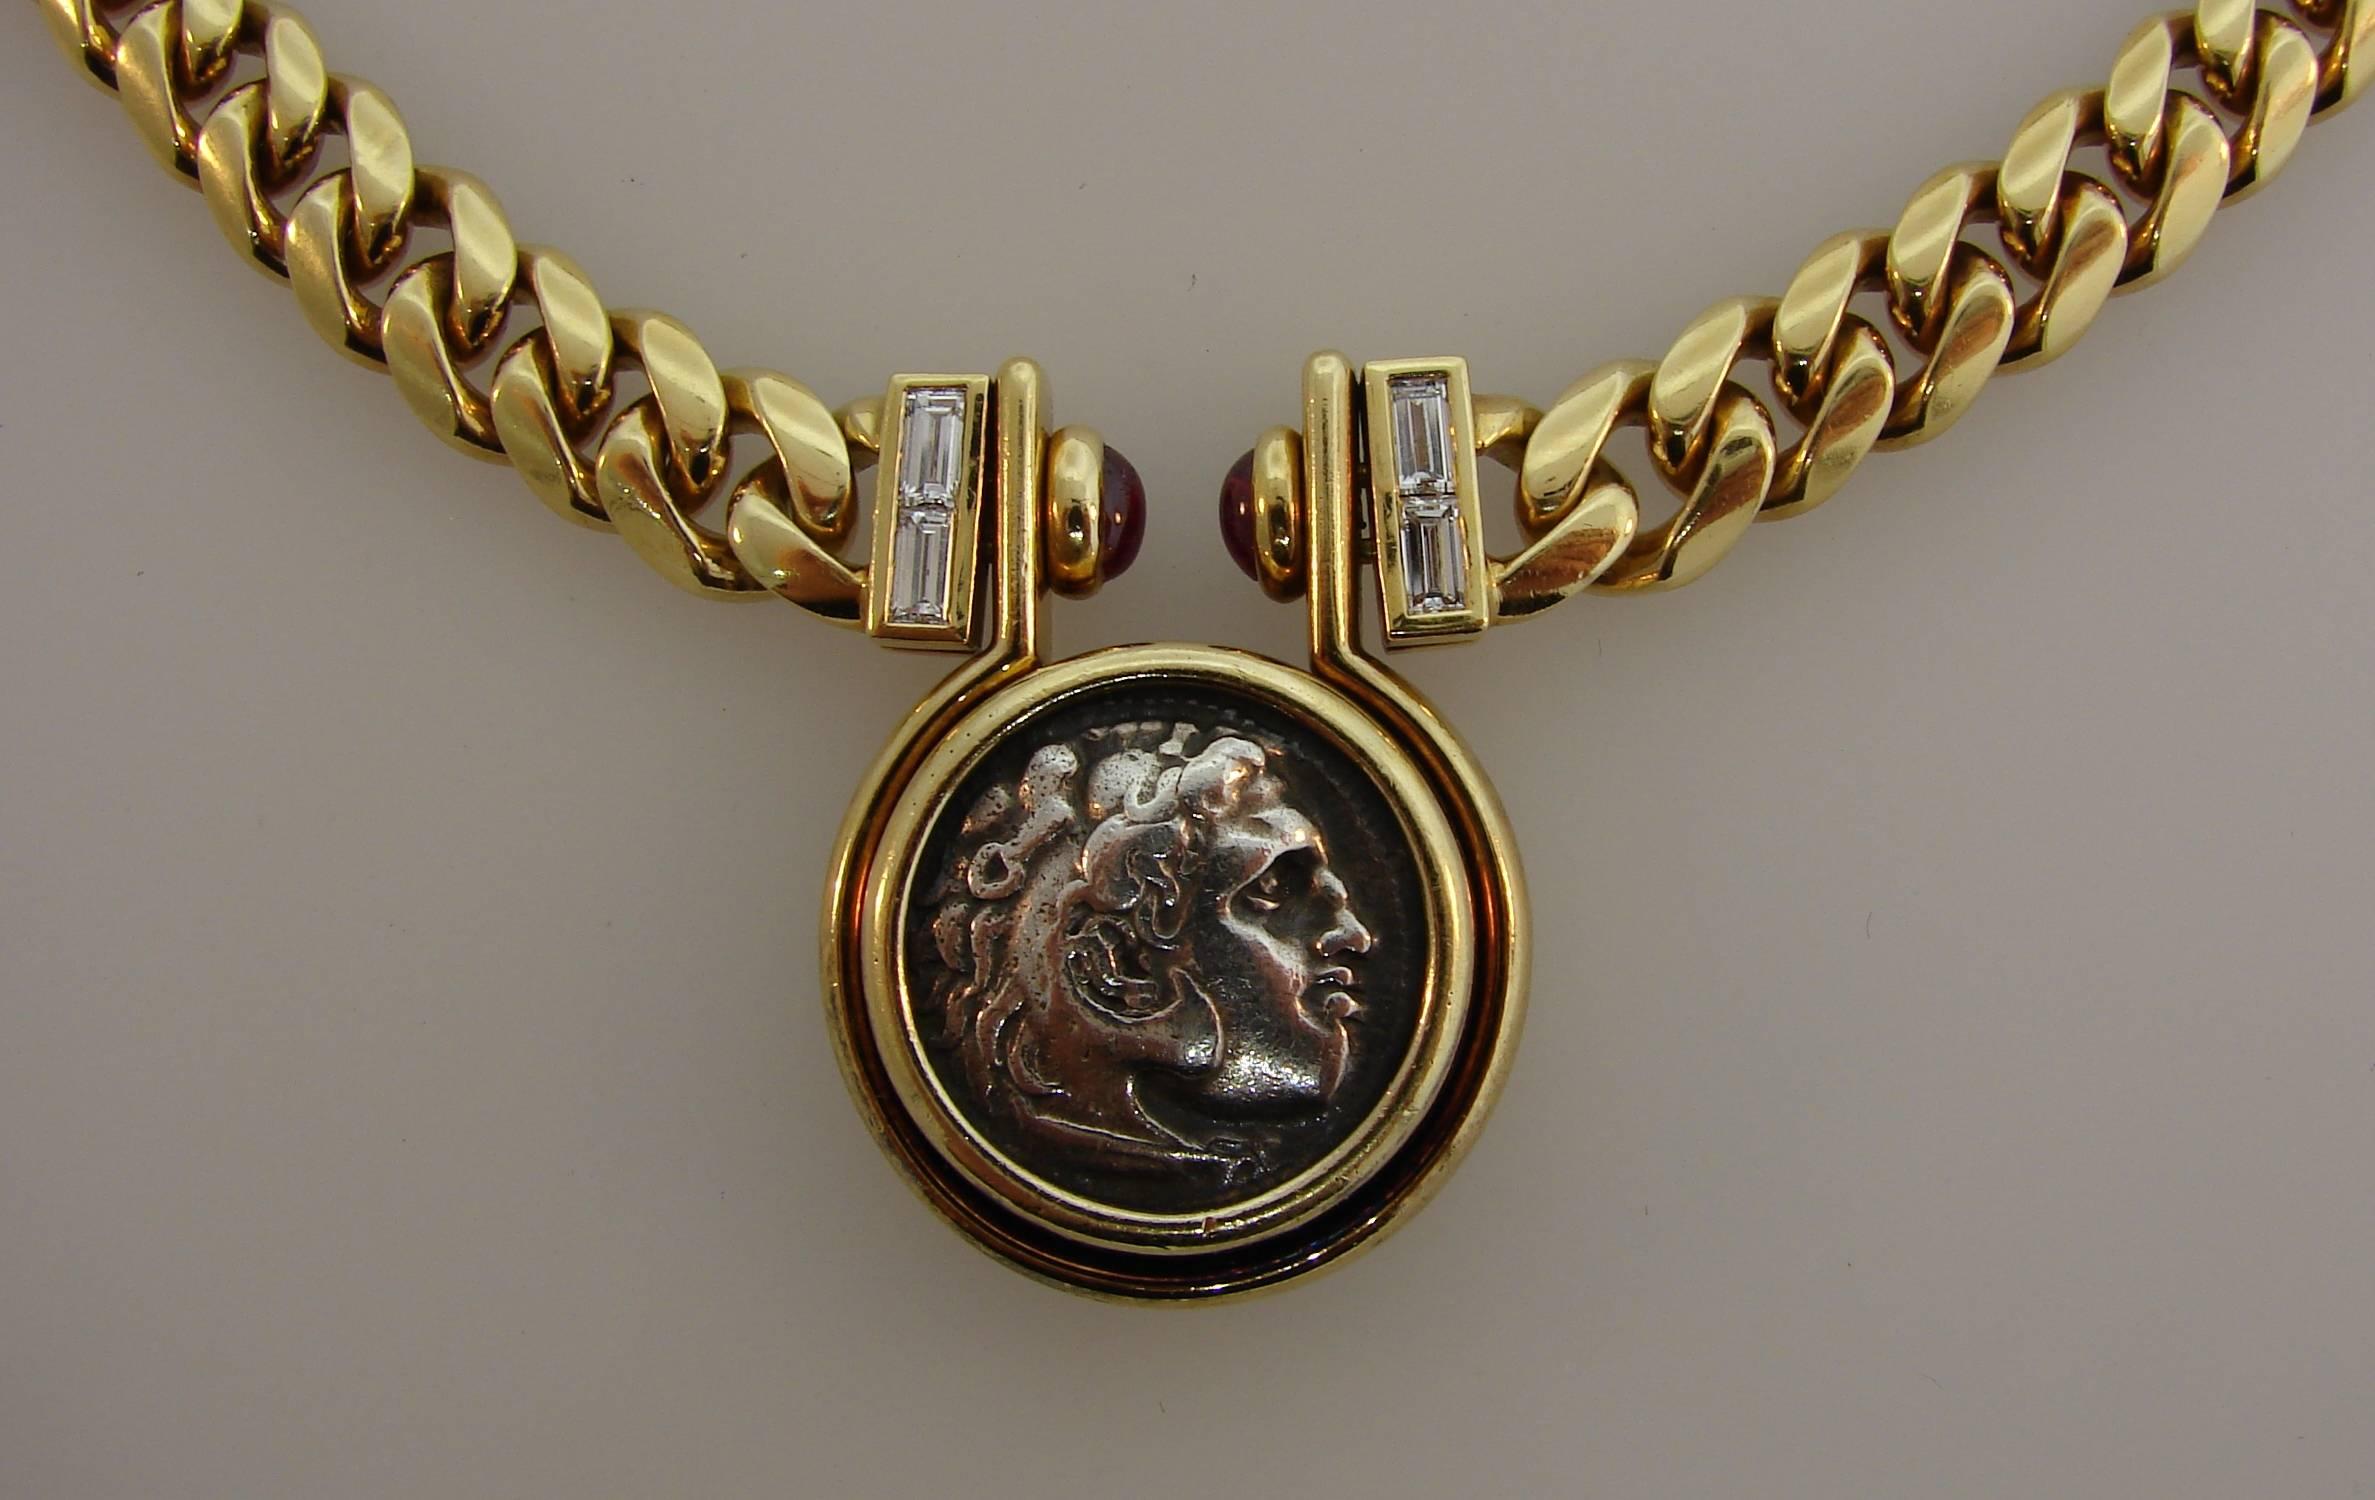 bulgari coin jewelry